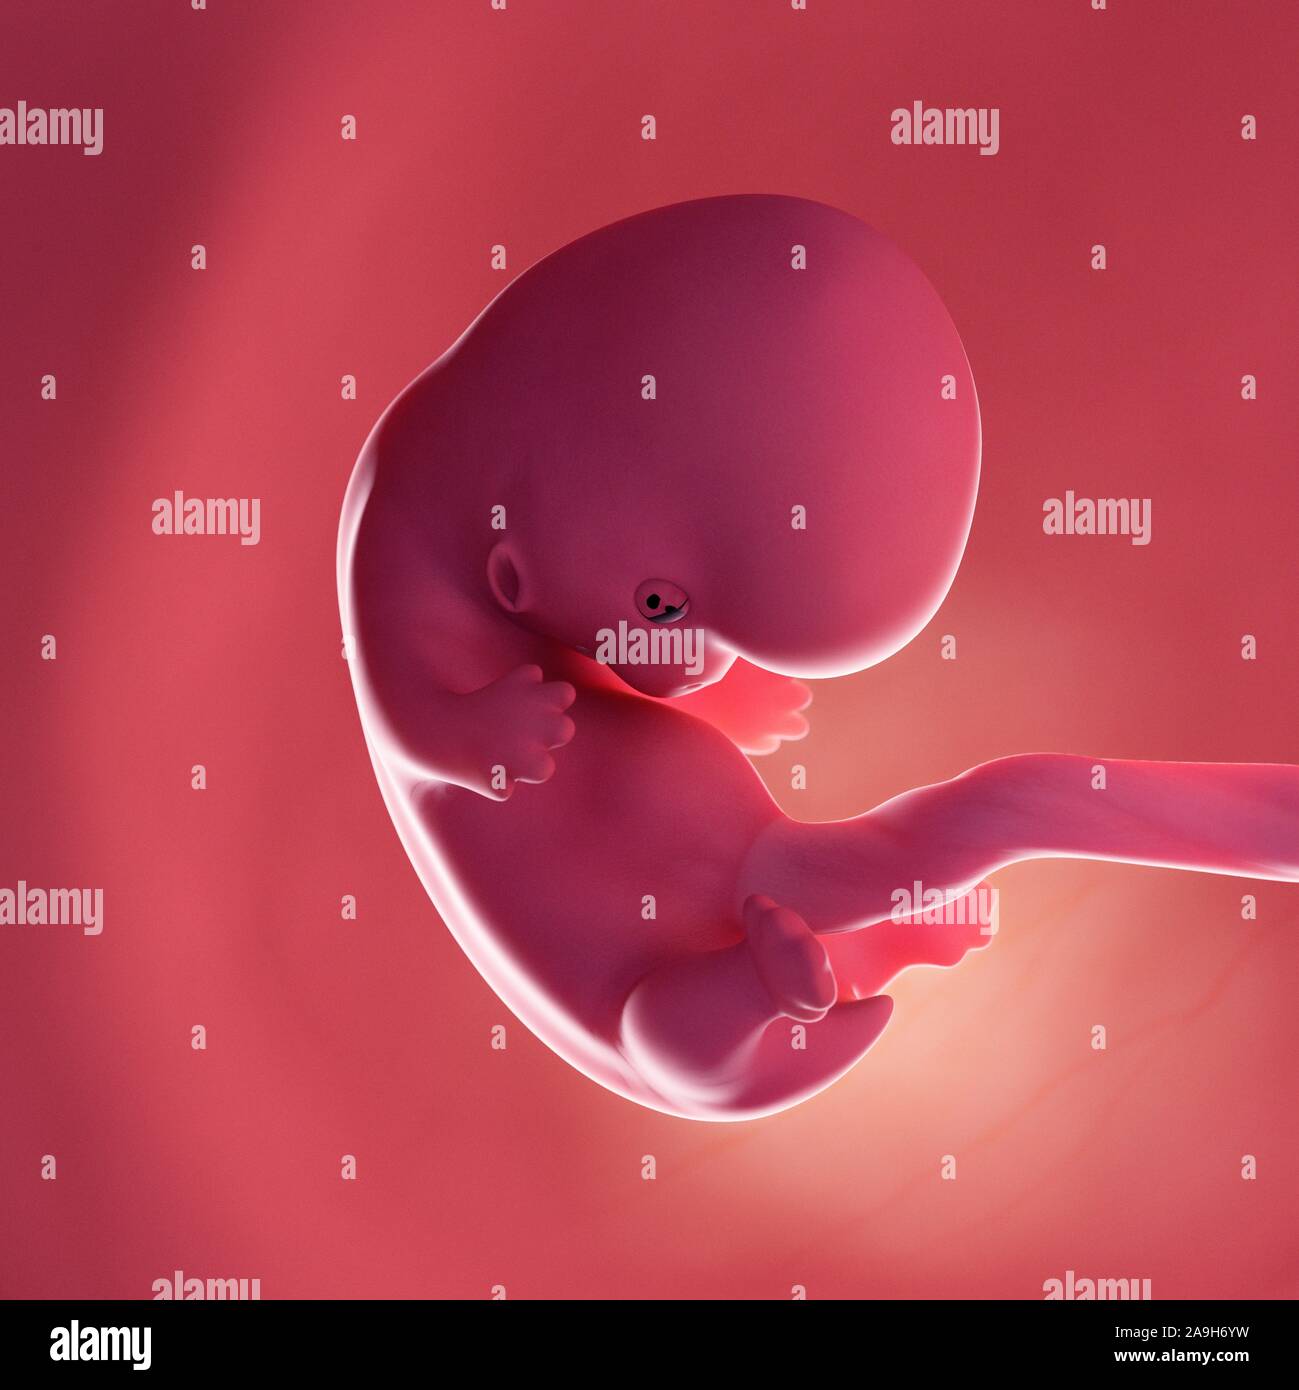 Fœtus à la semaine 8, illustration Banque D'Images